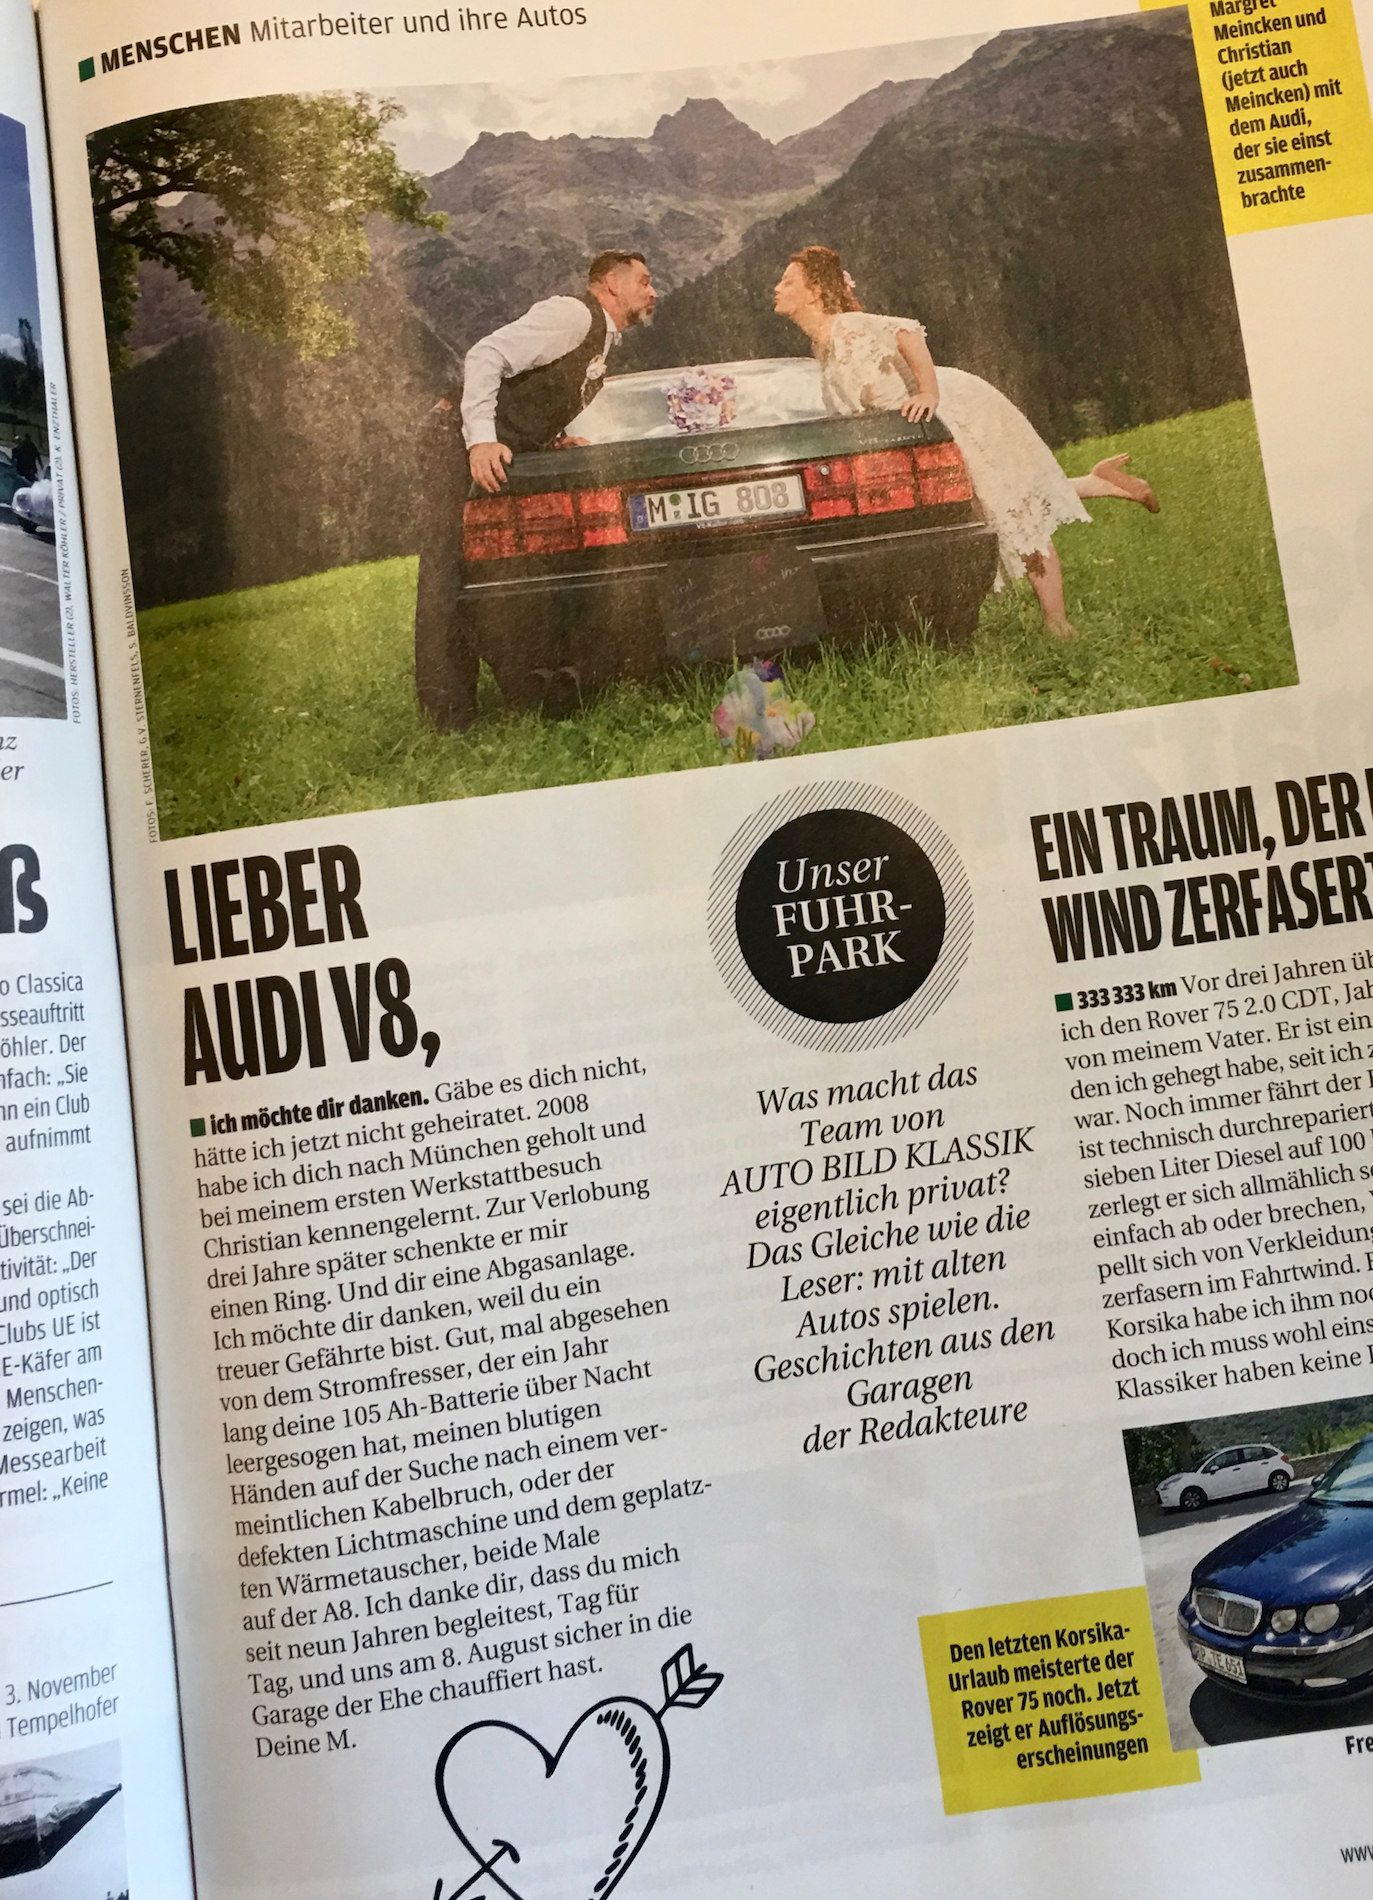 Mein Liebesbrief an den Audi V8 in der Auto Bild Klassik 10/2017